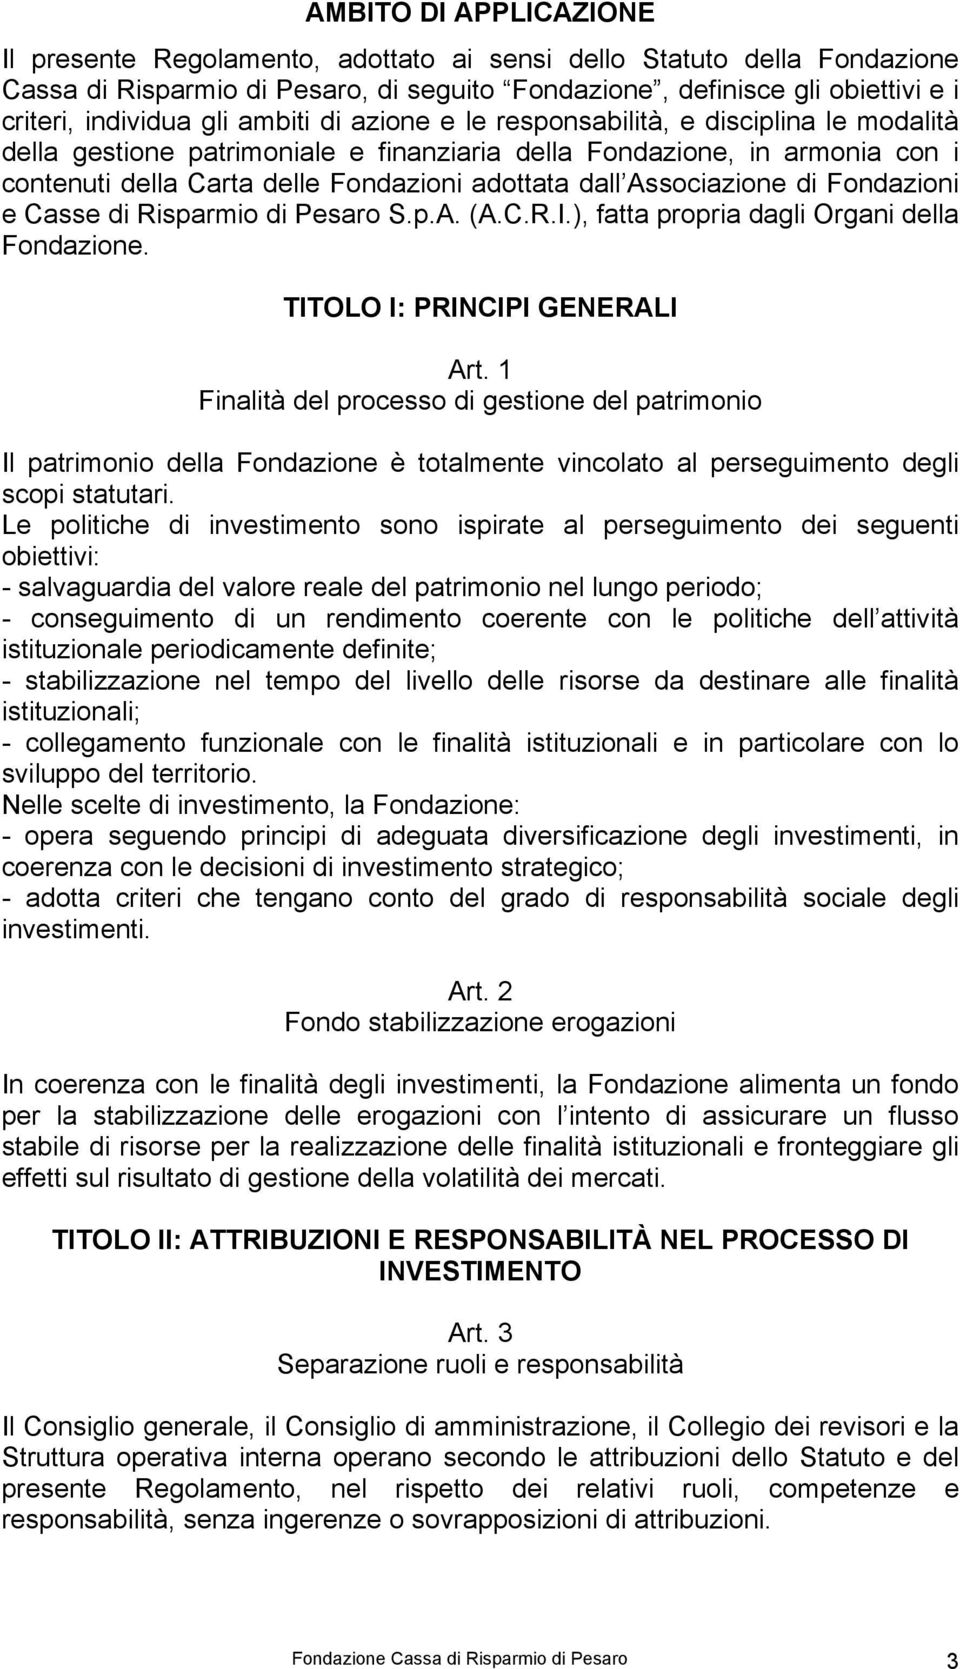 Associazione di Fondazioni e Casse di Risparmio di Pesaro S.p.A. (A.C.R.I.), fatta propria dagli Organi della Fondazione. TITOLO I: PRINCIPI GENERALI Art.